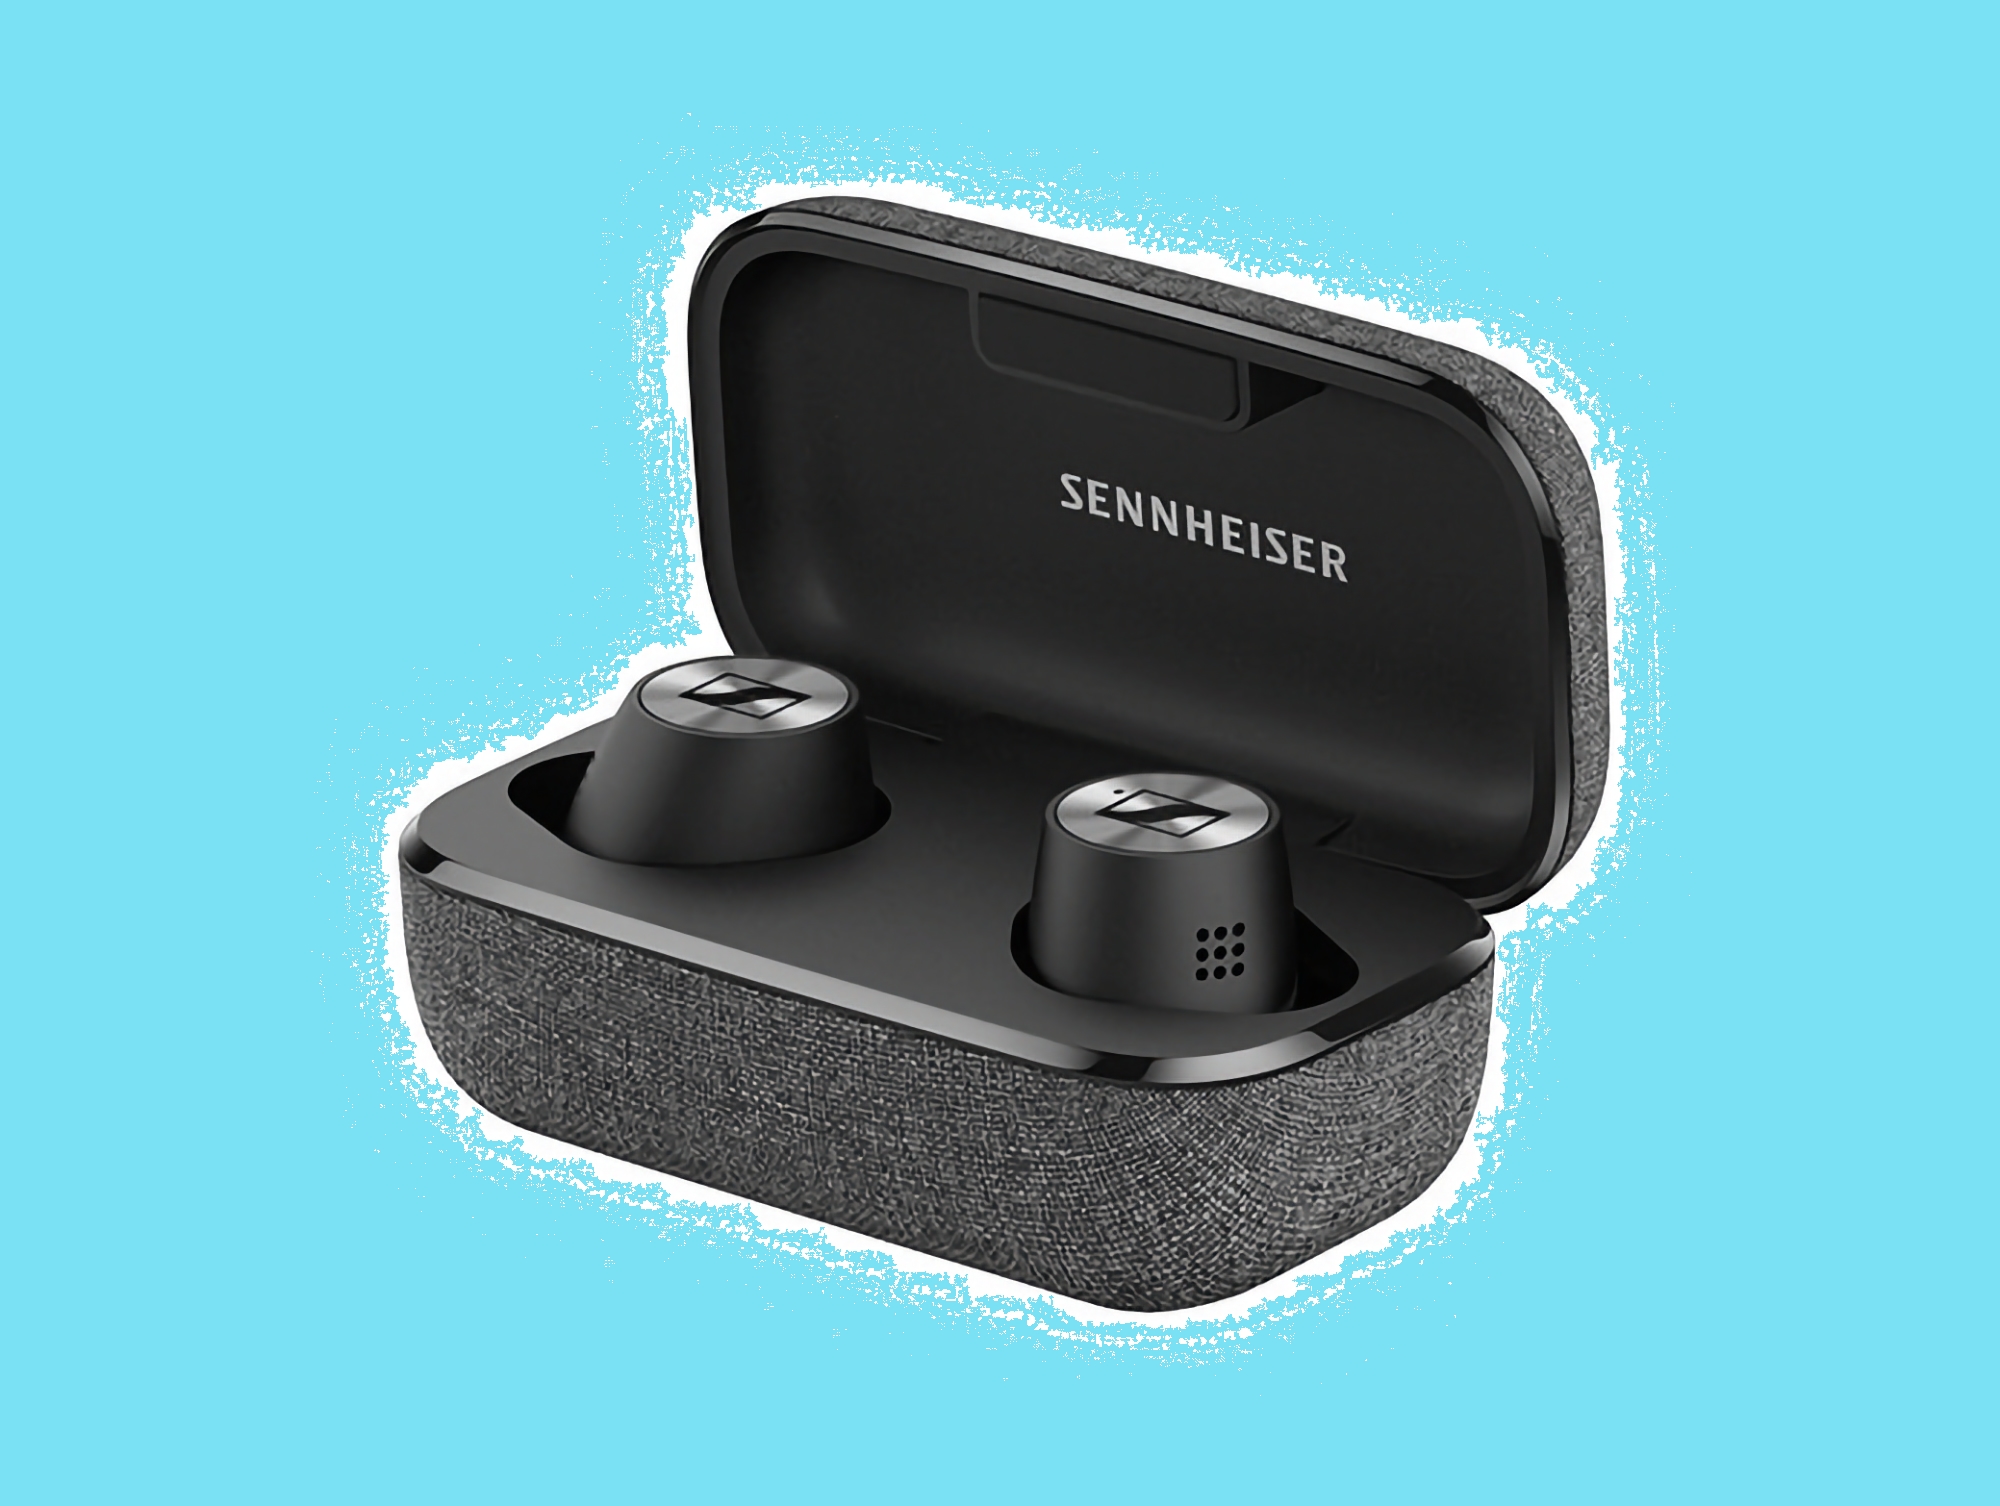 57% de descuento: Sennheiser Momentum True Wireless 2 disponibles en Amazon a precio promocional.